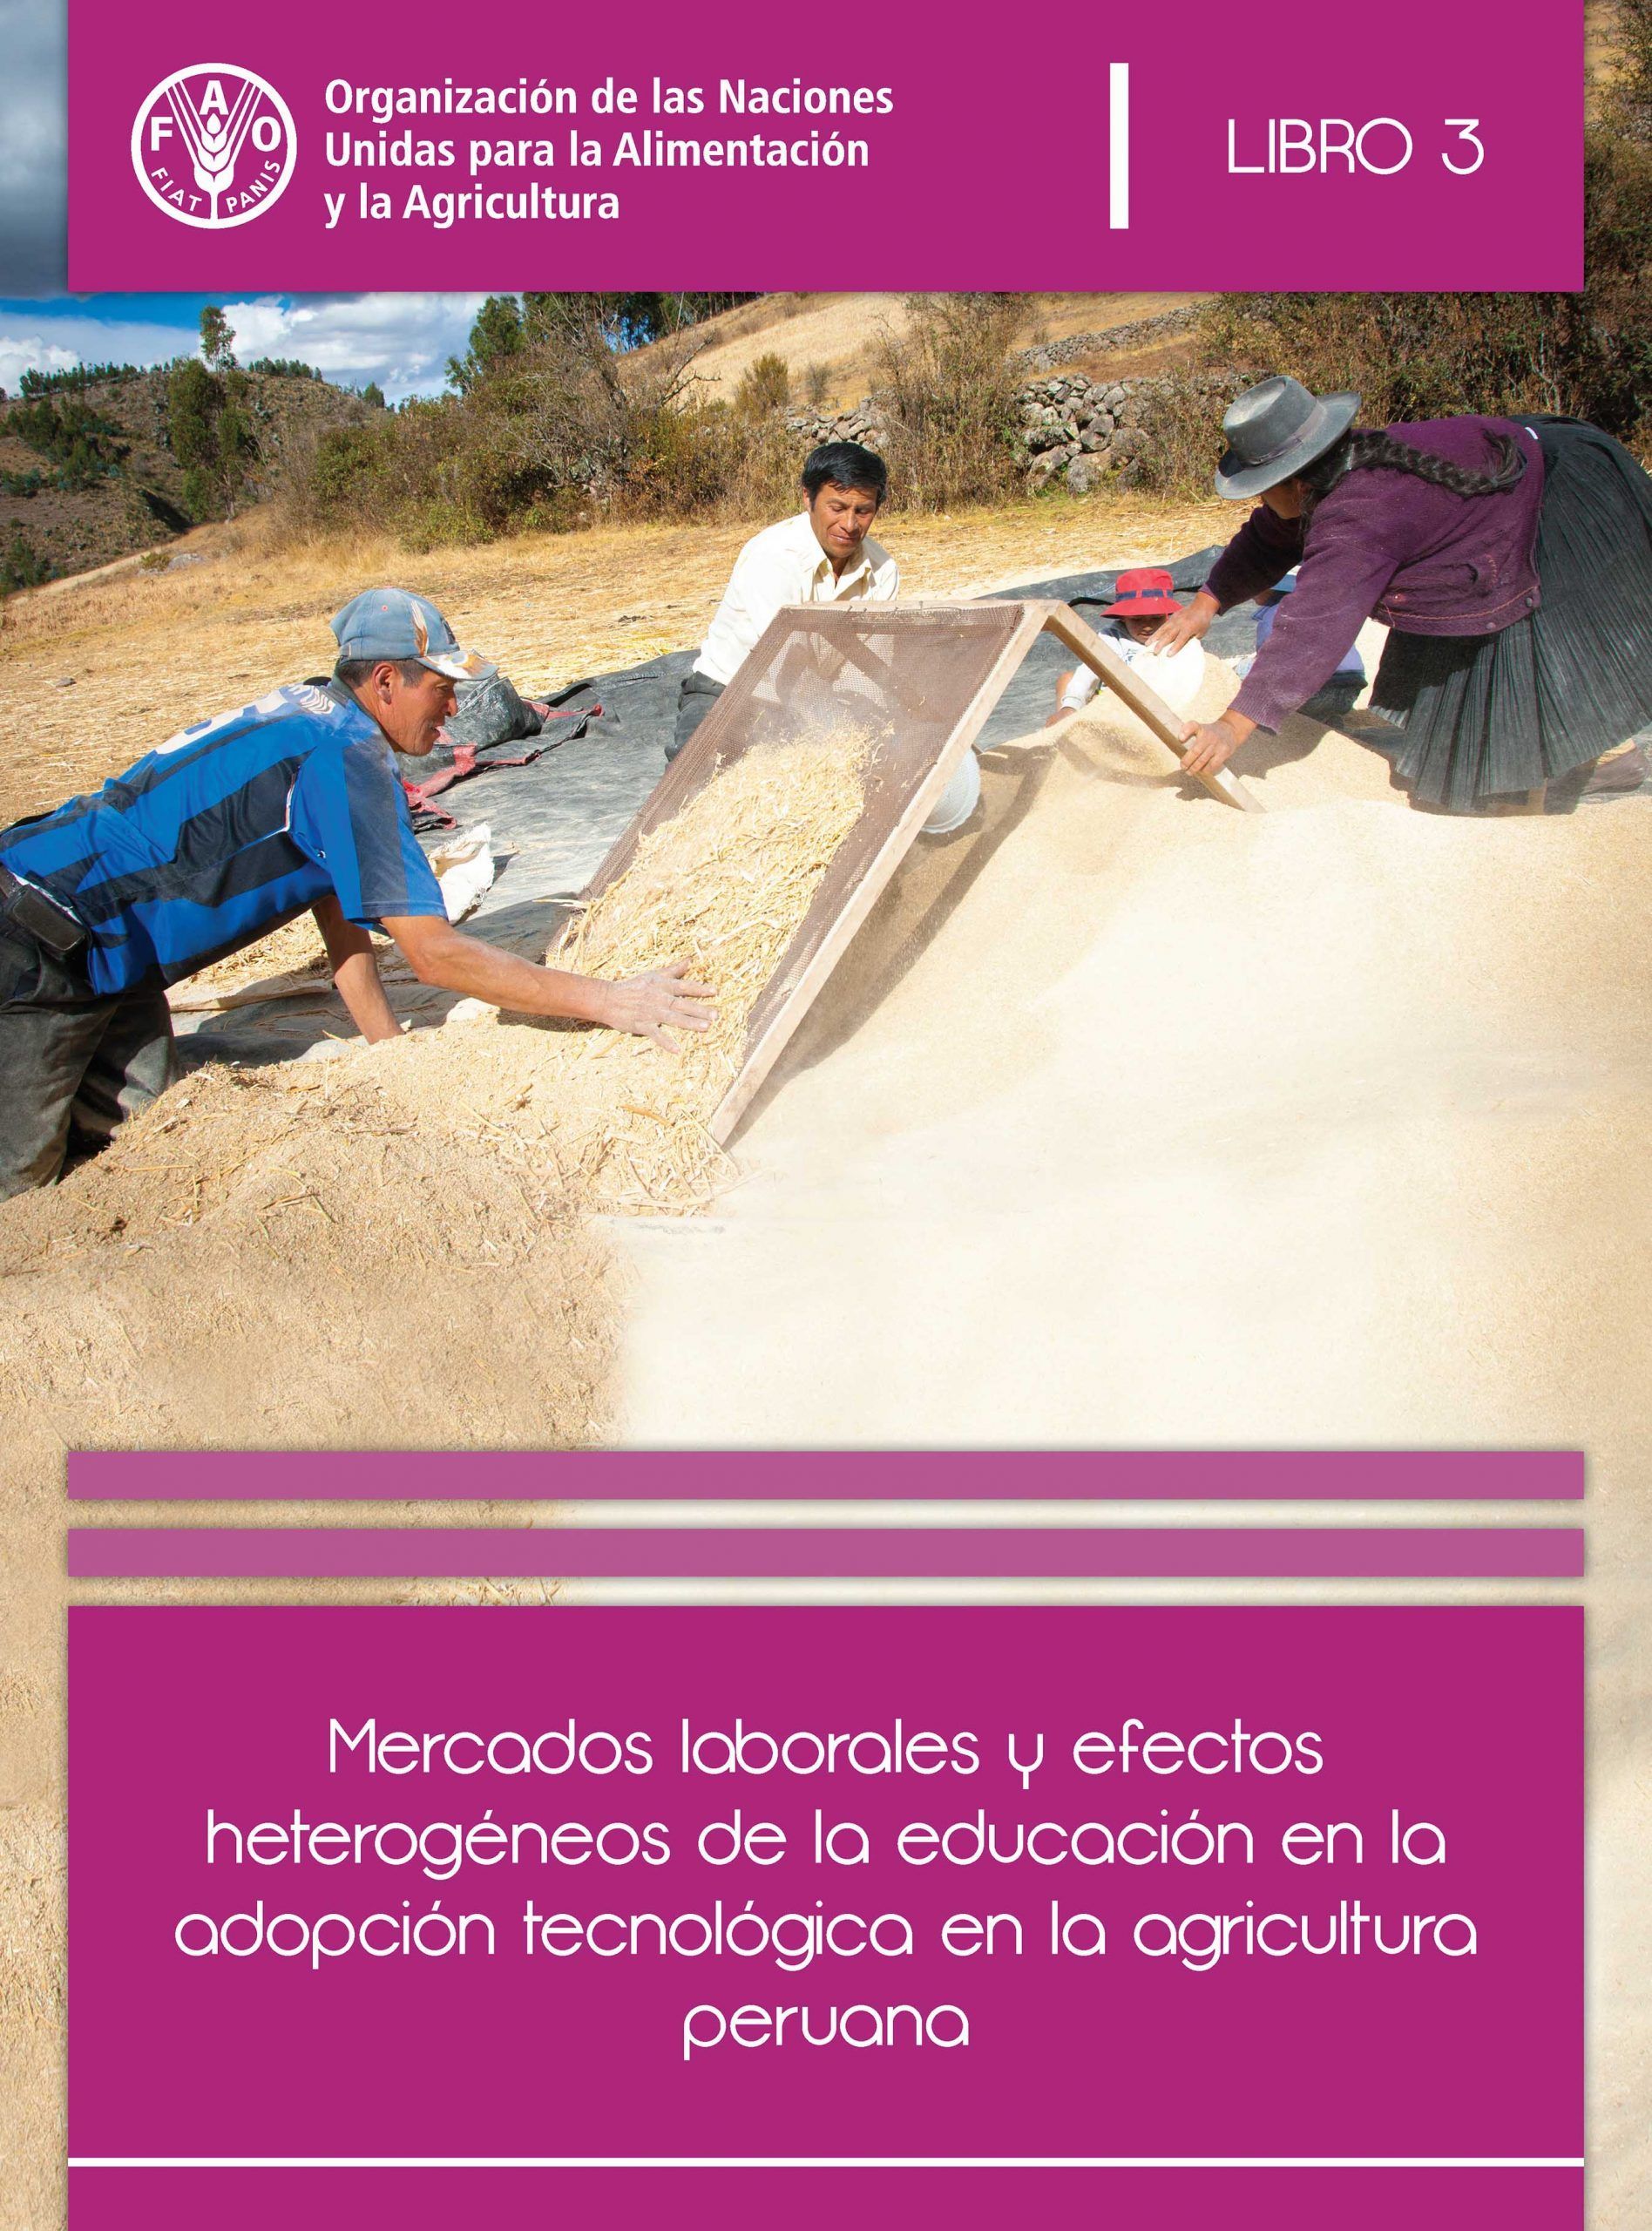 Mercados laborales y efectos heterogéneos de la educación en la adopción tecnológica en la agricultura peruana